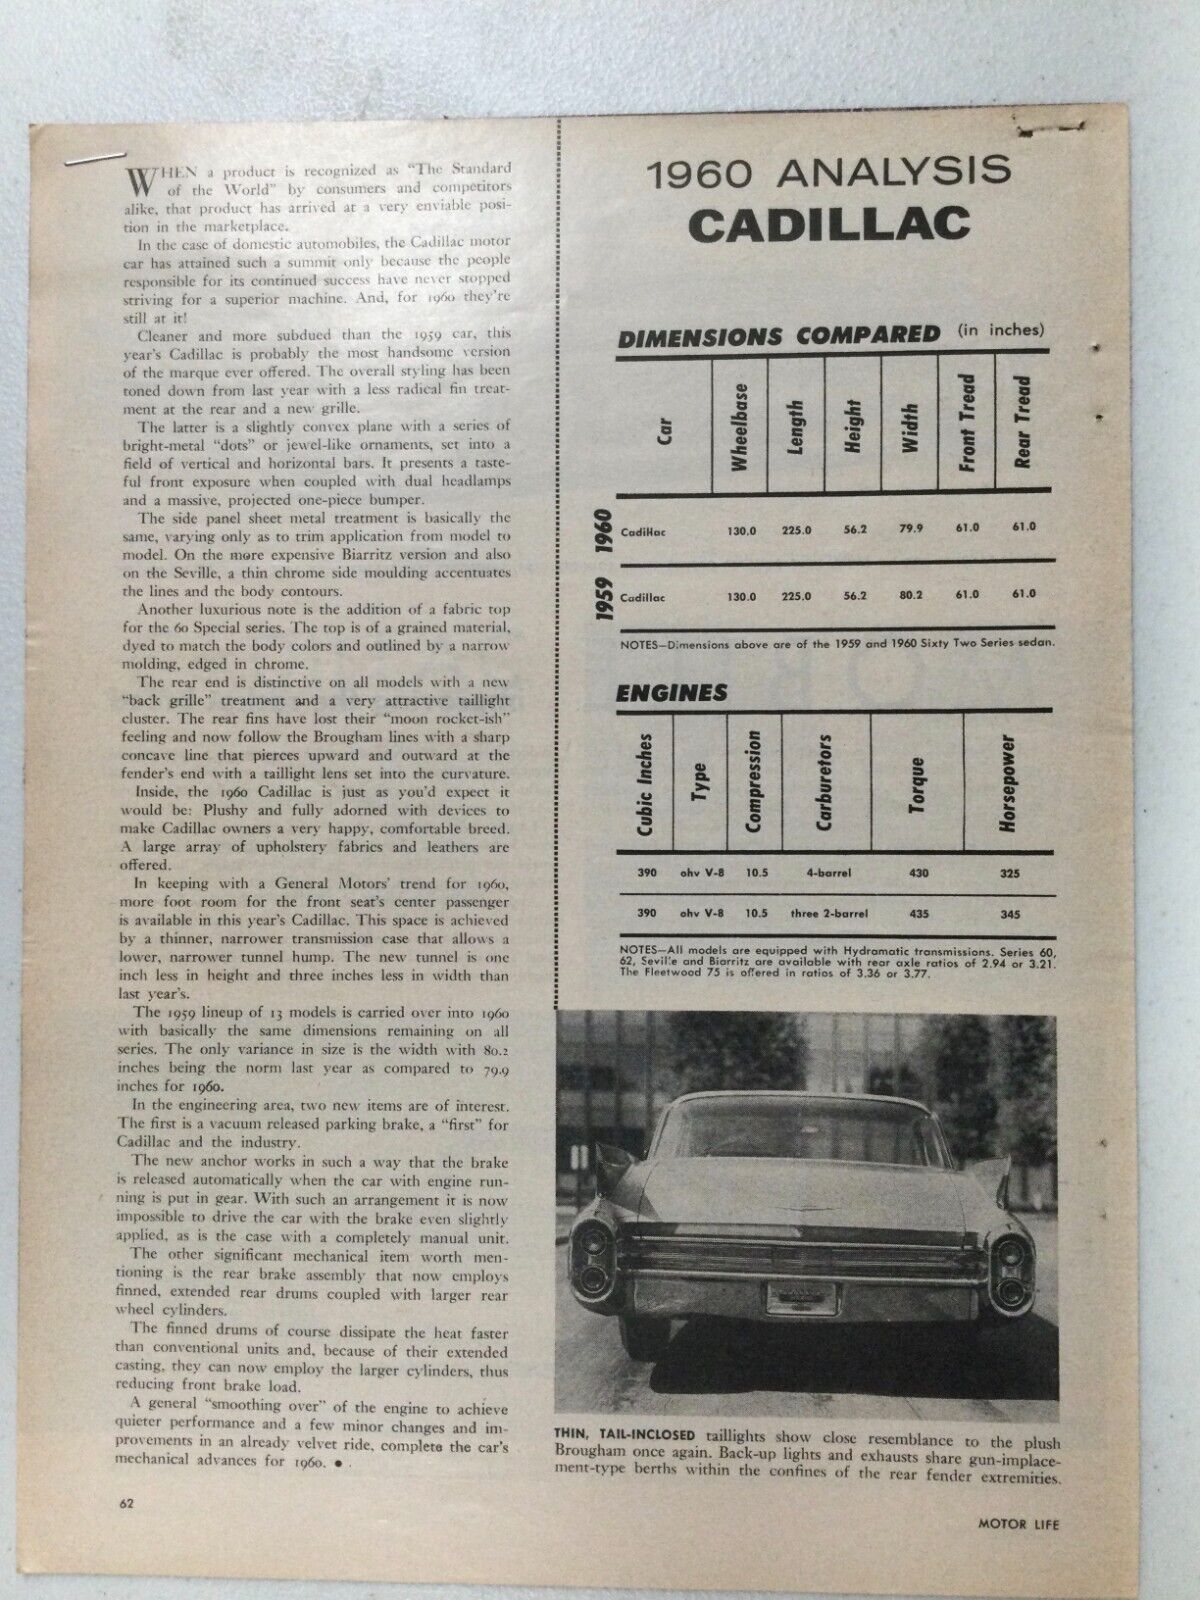 PlymouthArt01 Article Analysis 1960 Cadillac November 1959 2 page